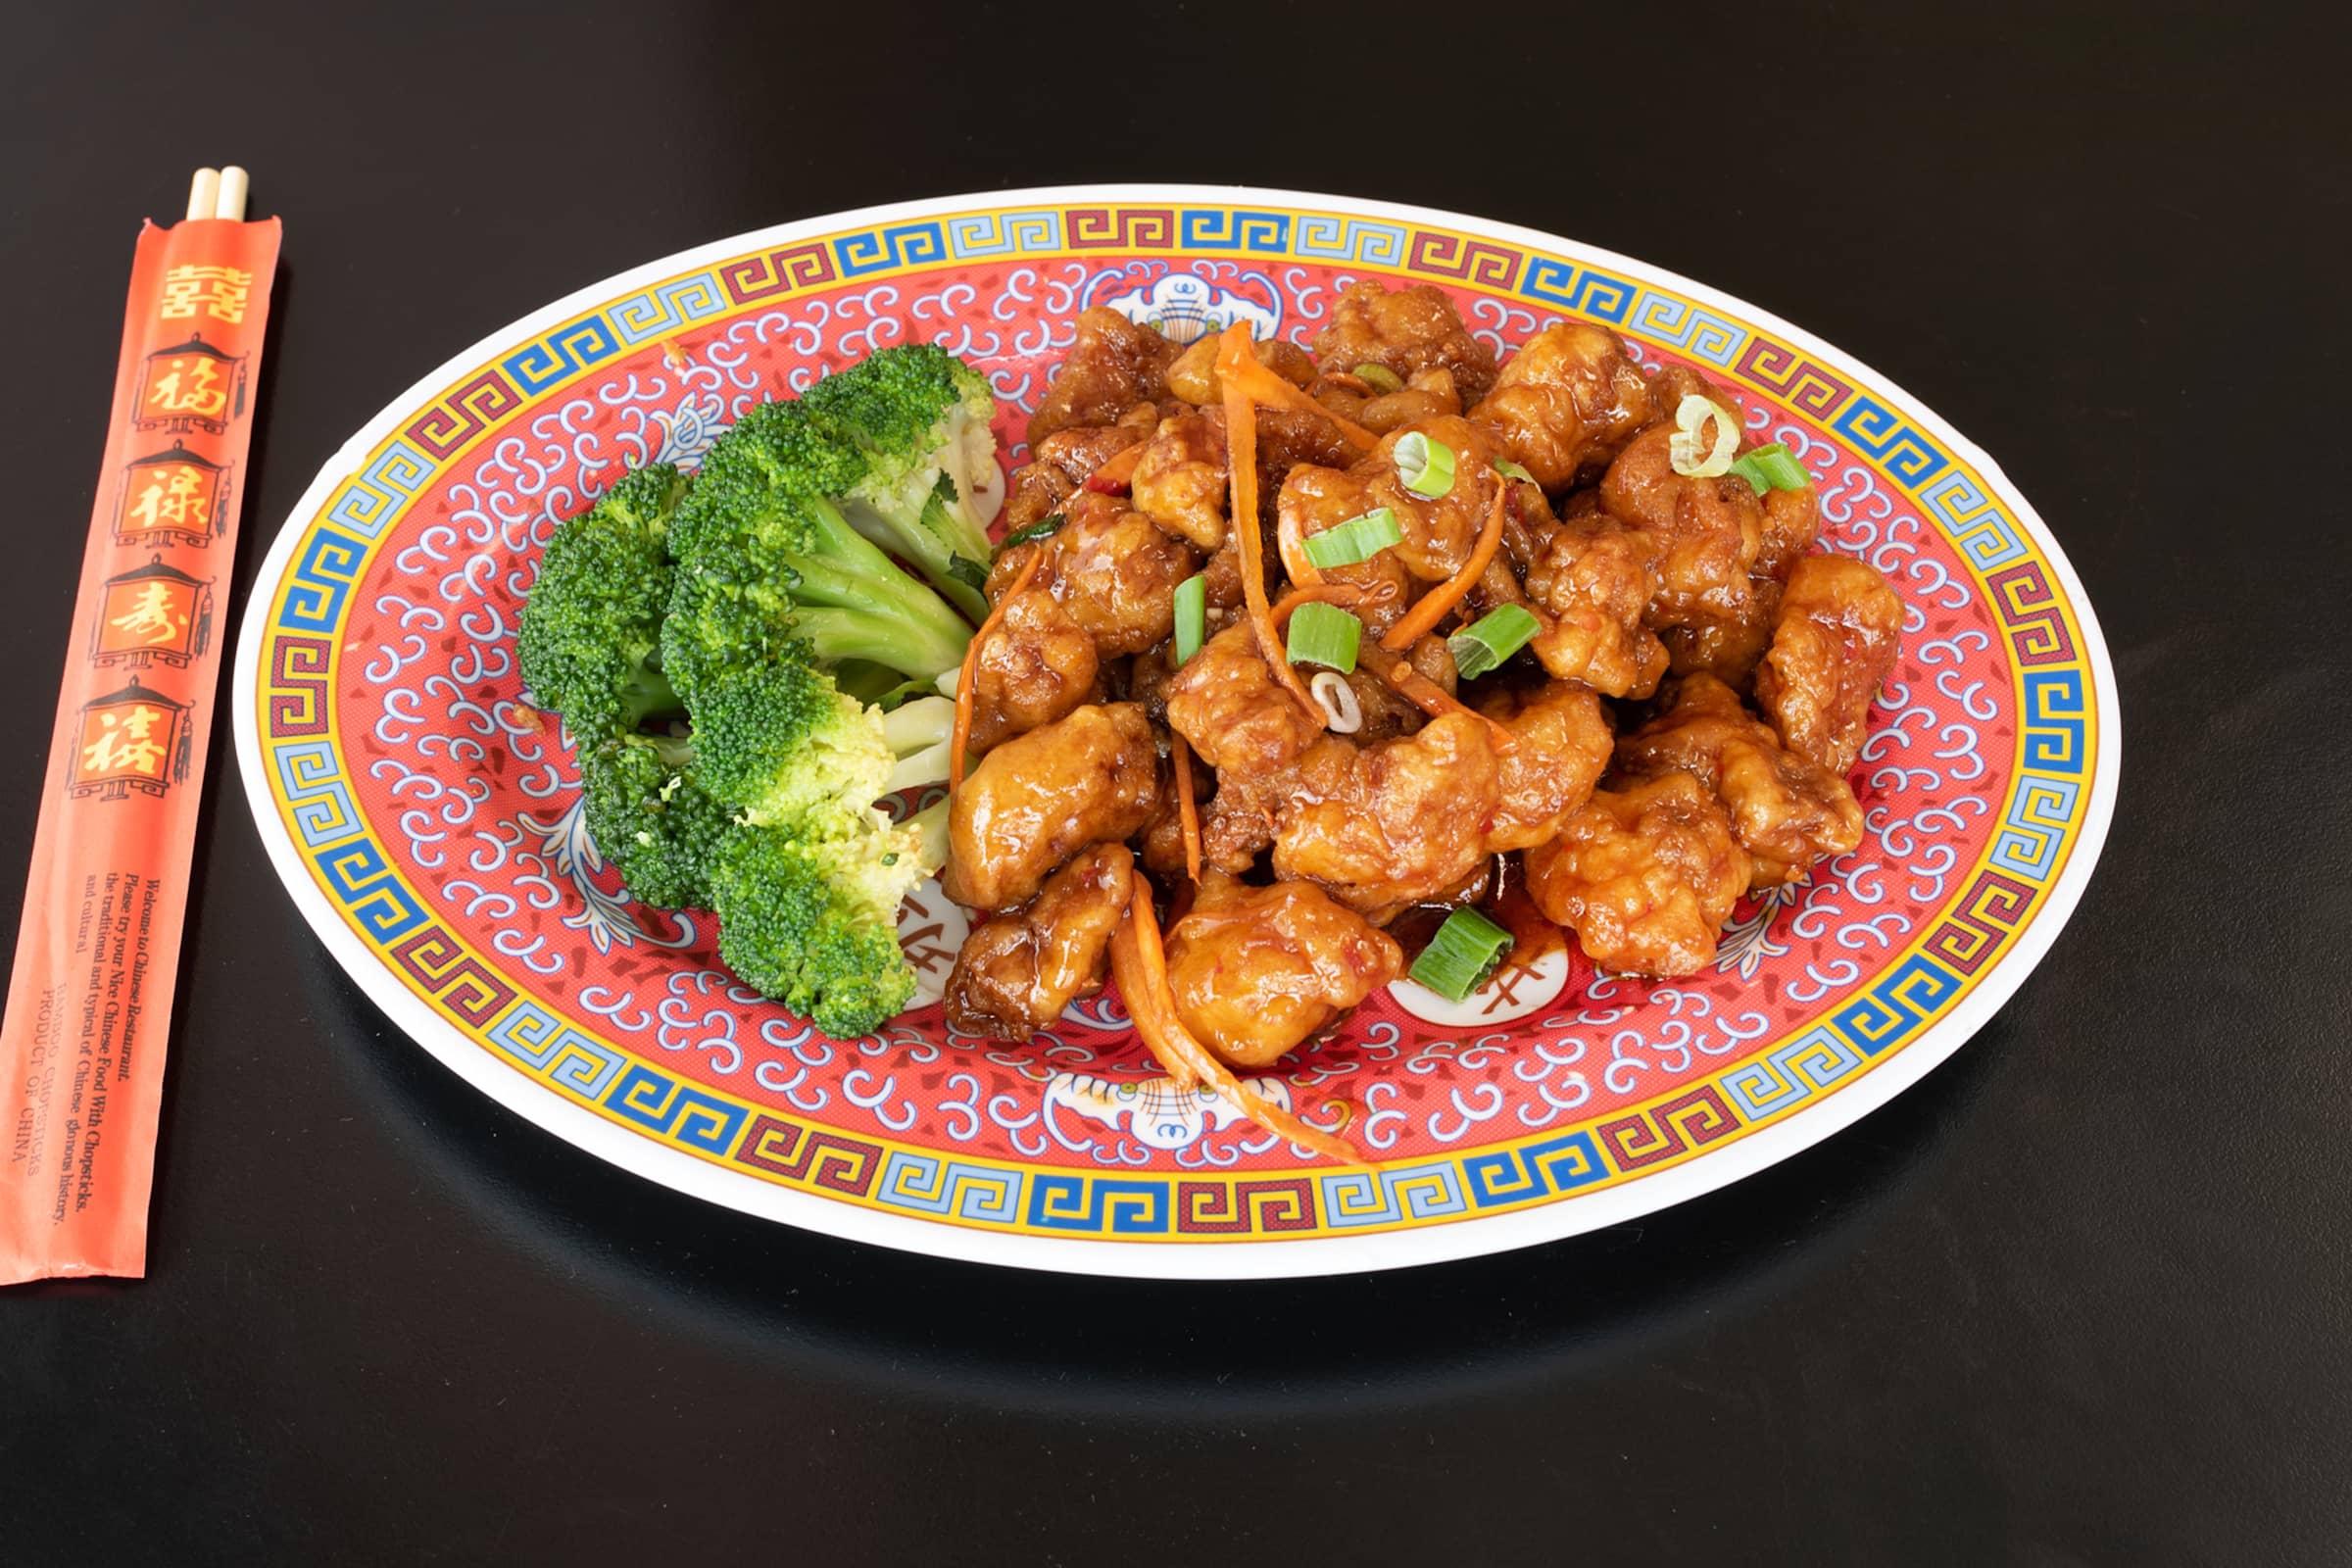 Trải nghiệm dịch vụ đặt món online chuyên nghiệp nhất tại Yang-Kee – nhà hàng số 1 về ẩm thực châu Á. Với giao diện dễ sử dụng, hệ thống đặt hàng nhanh chóng và dịch vụ chăm sóc khách hàng tuyệt vời, bạn sẽ được tận hưởng món ăn yêu thích chỉ trong vài phút.